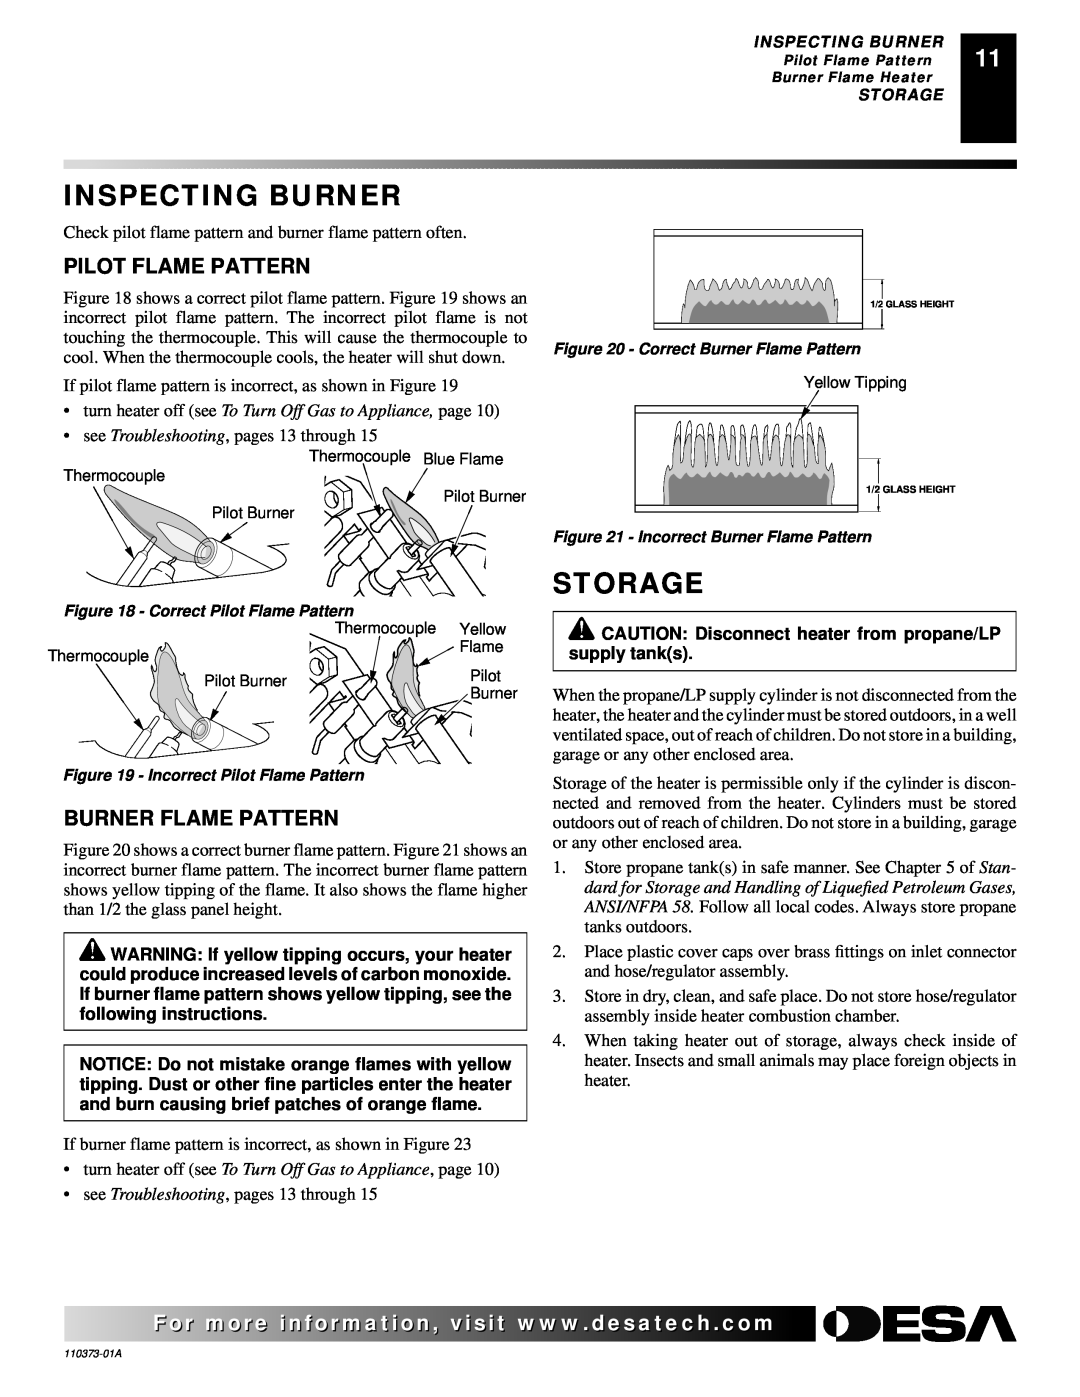 Desa REM10PT installation manual Inspecting Burner, Storage, Pilot Flame Pattern, Burner Flame Pattern 